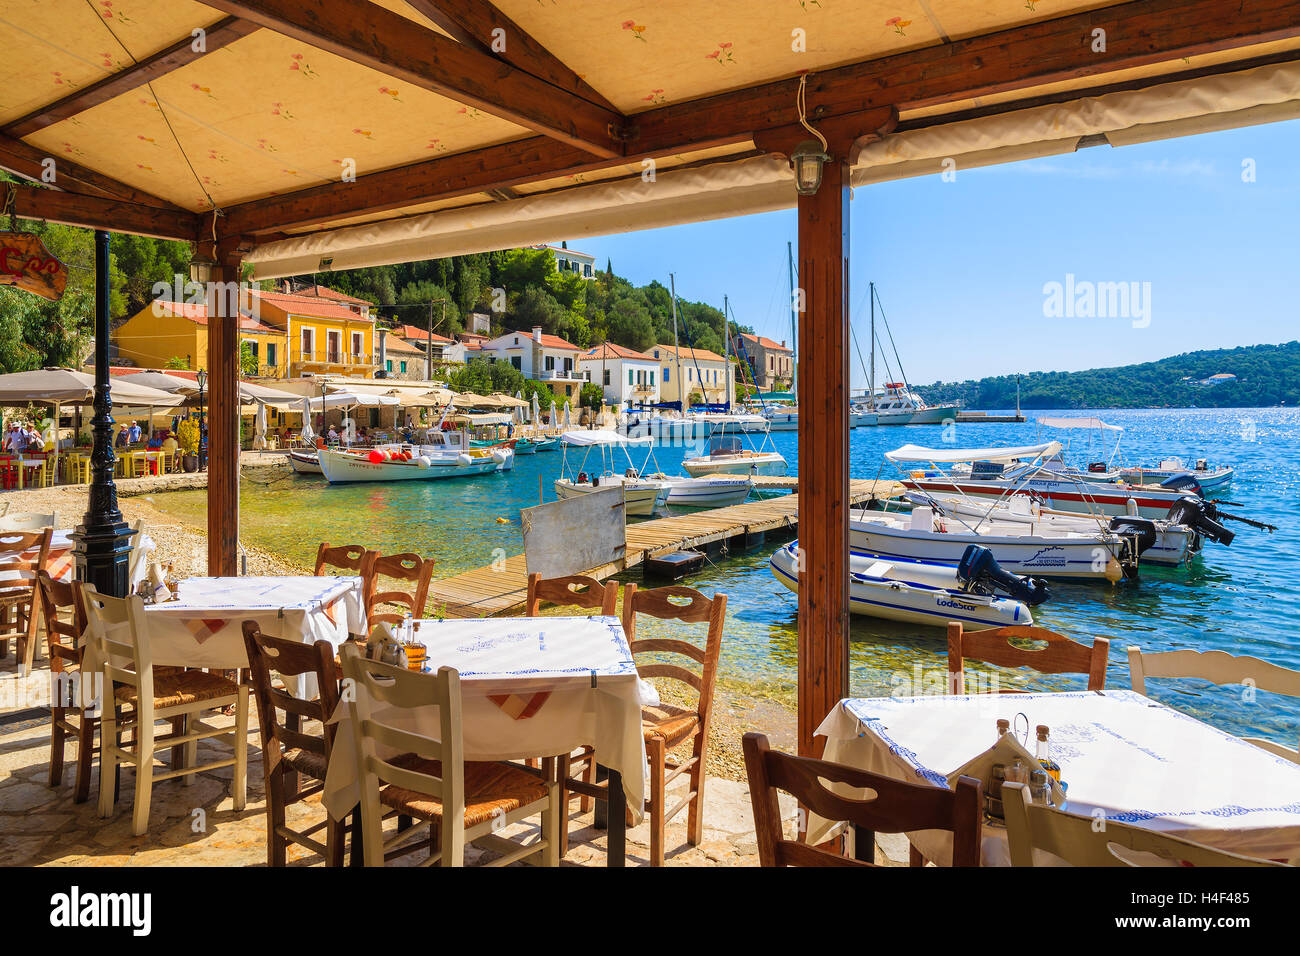 KIONI Hafen, Insel ITHAKA - SEP 19, 2014: Tabellen in griechisches Restaurant im Hafen Kioni. Griechenland ist ein sehr beliebtes Urlaubsziel in Europa. Stockfoto